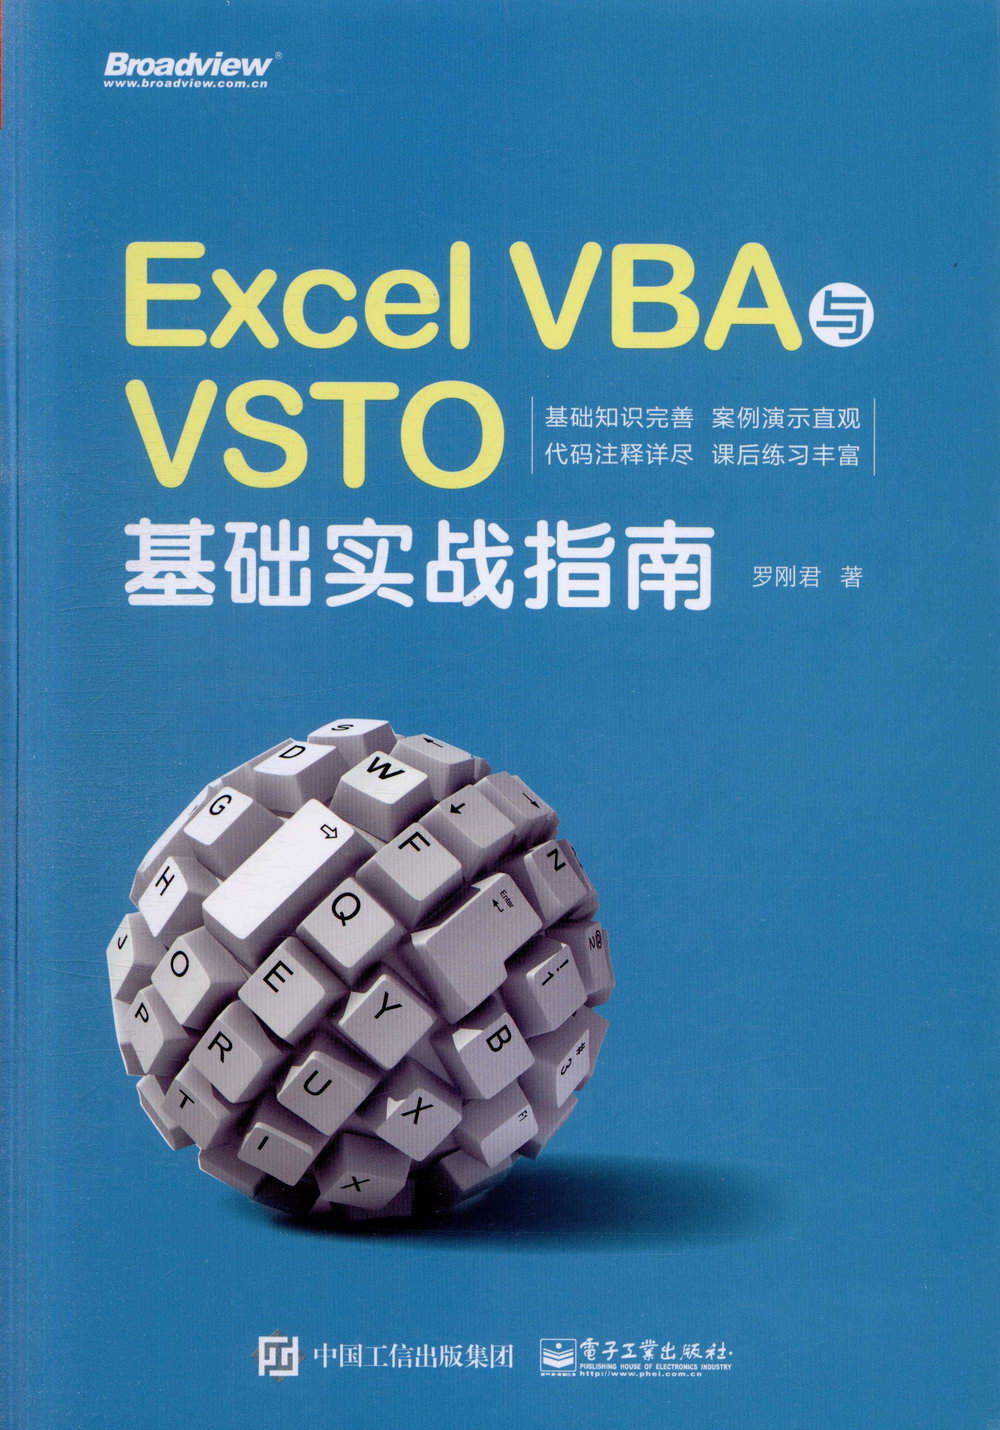 Excel VBA與VSTO基礎實戰指南